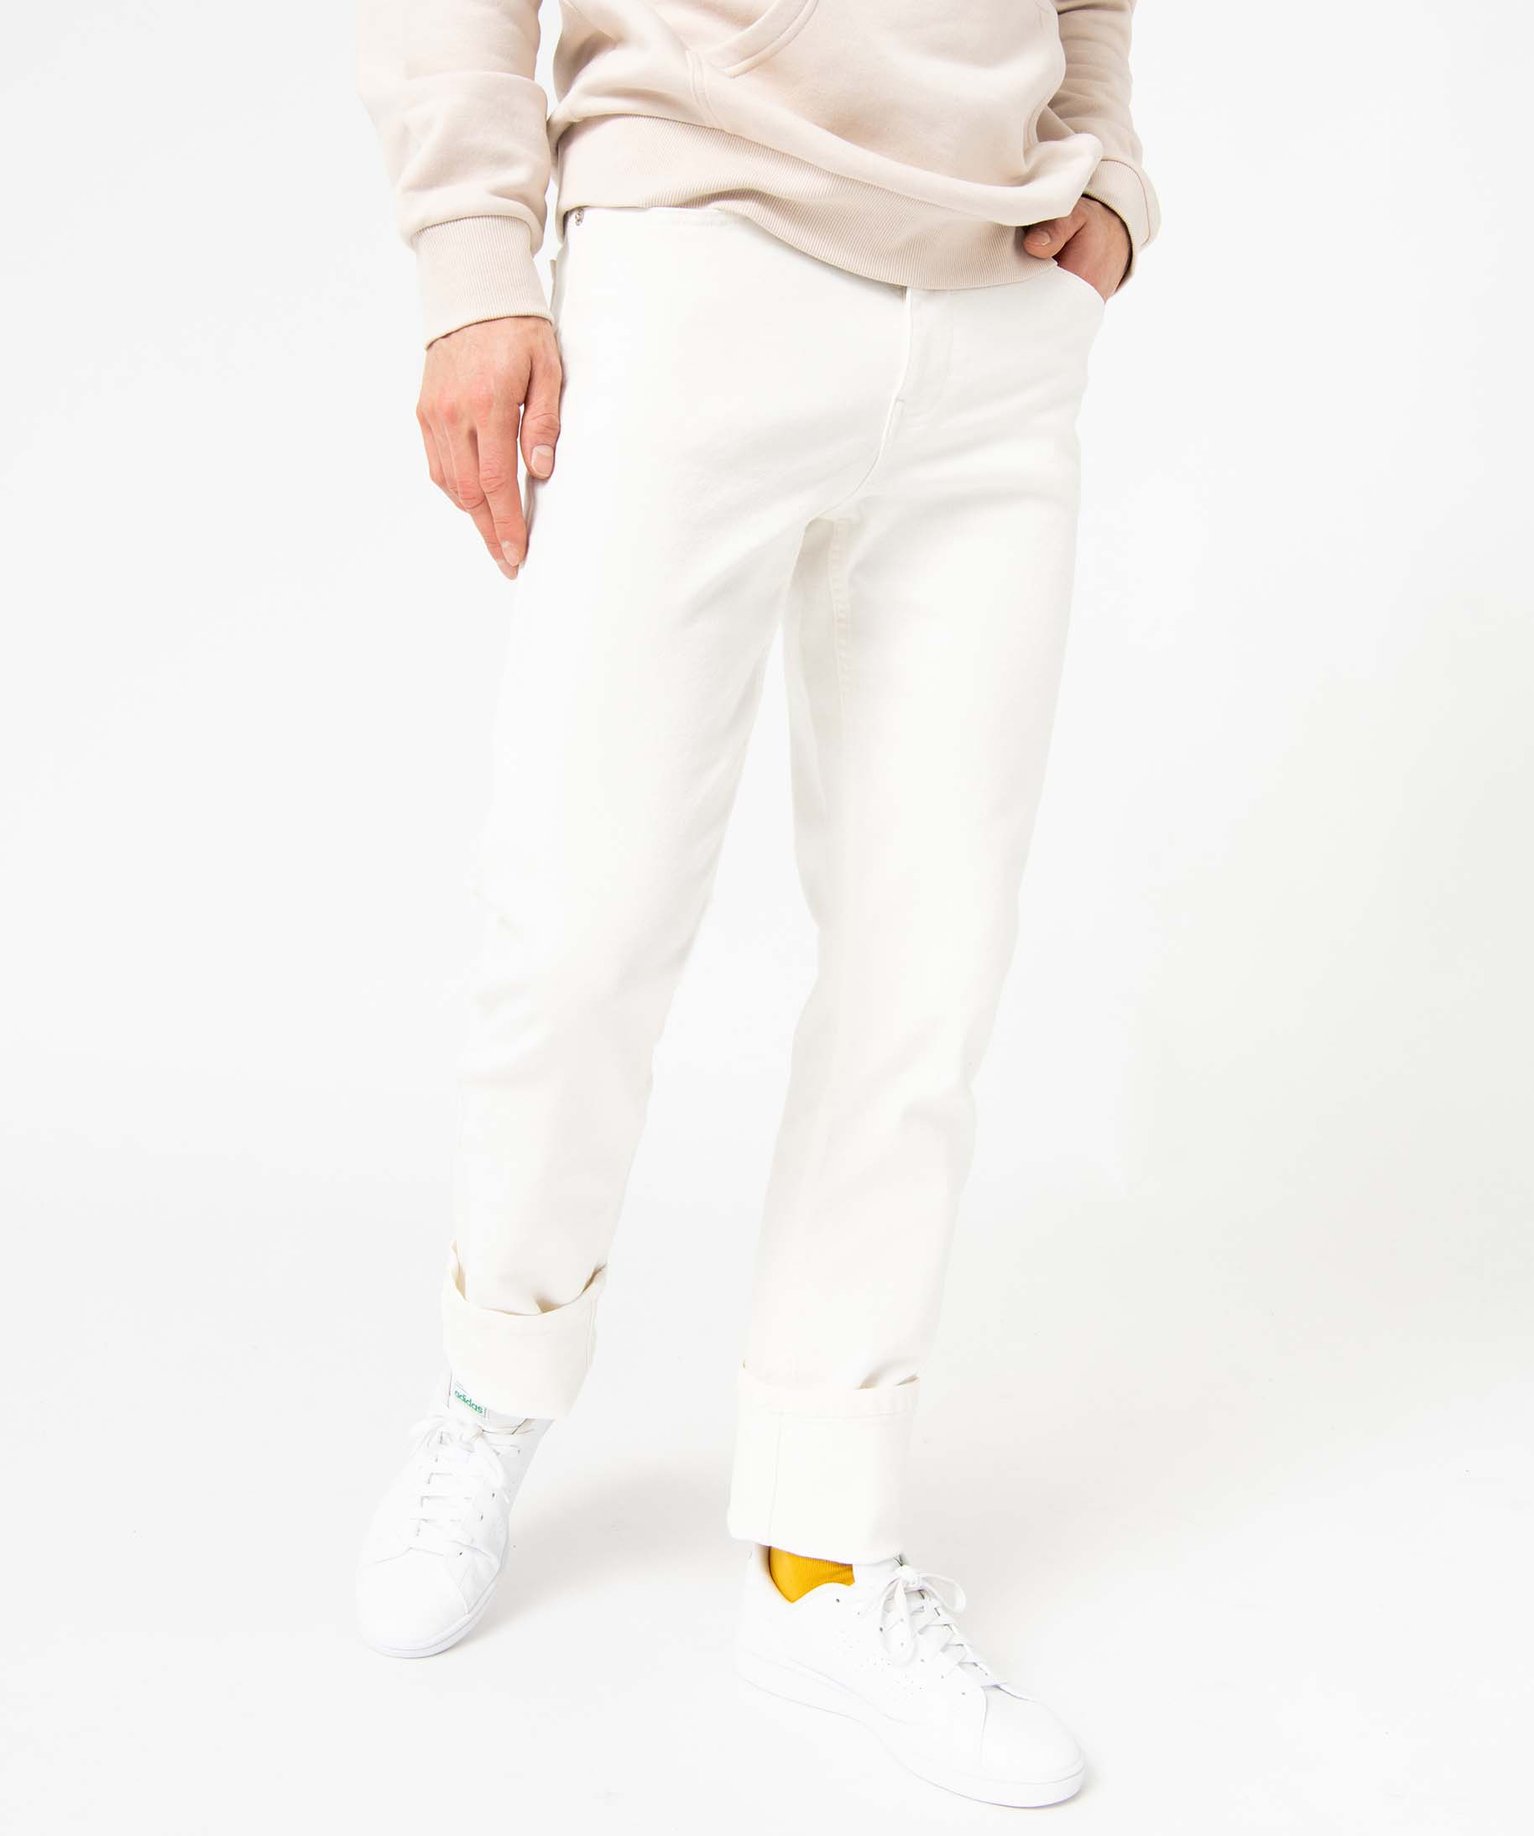 jean homme coupe slim en coton stretch blanc pantalons de costume